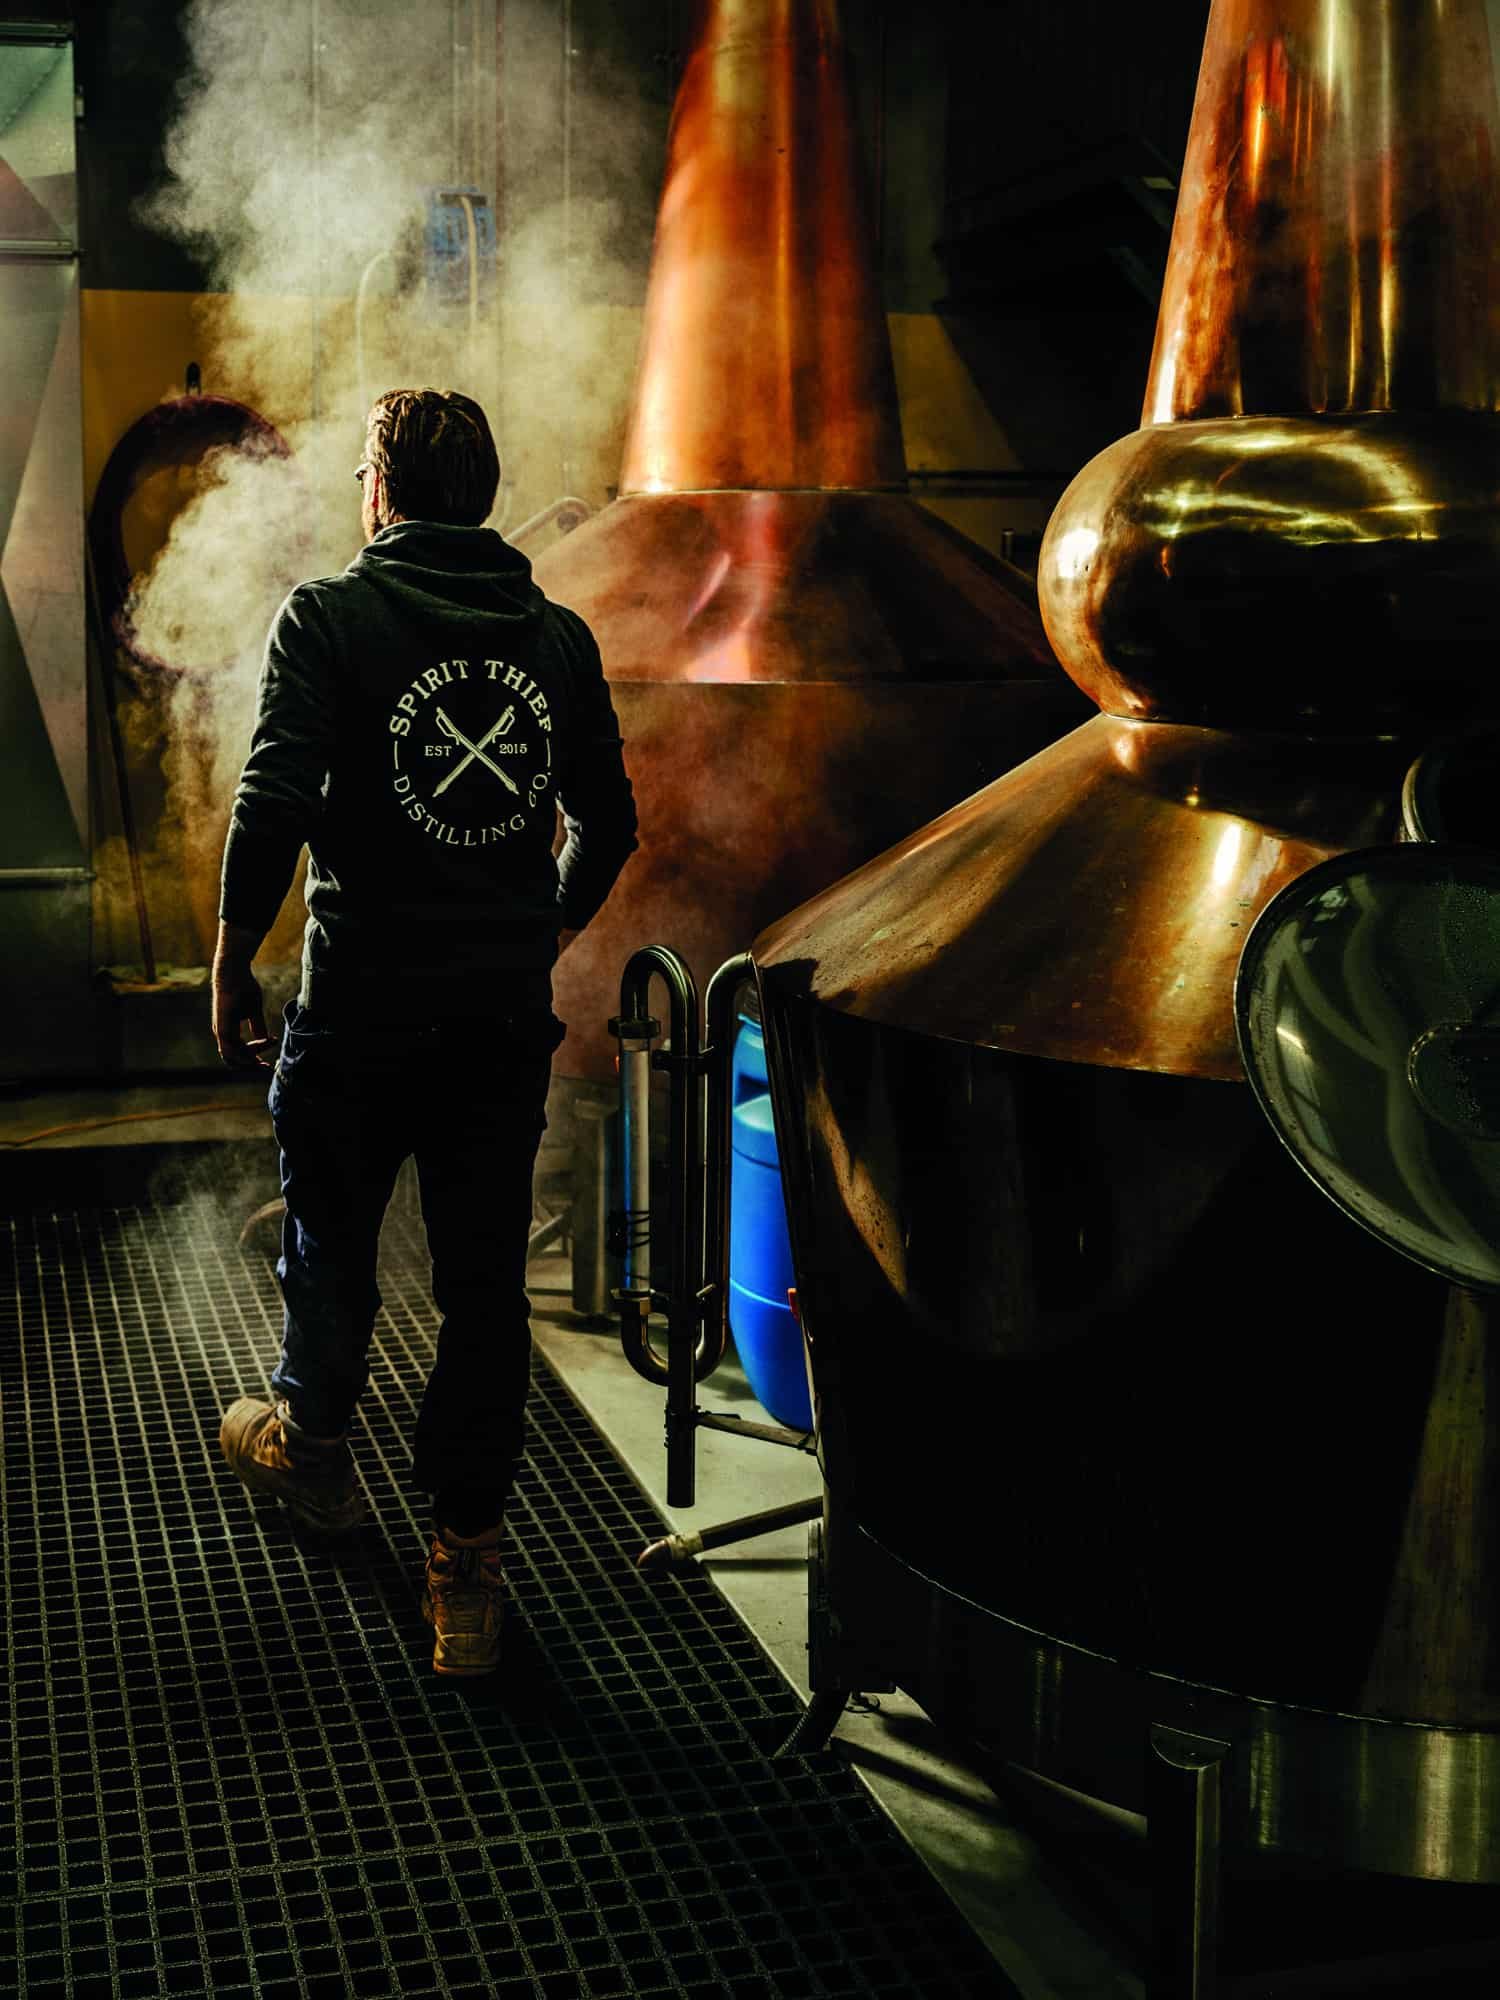 A man in a hoodie walking through a grape distillery.